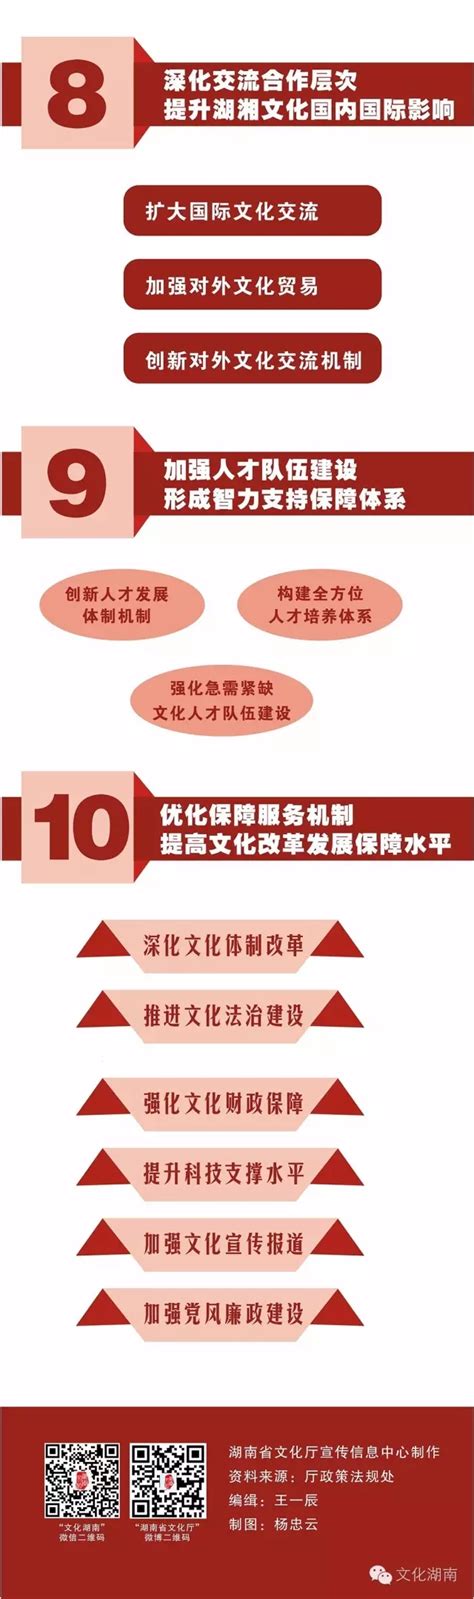 【政策图解】一张图读懂“十三五”湖南文化改革发展规划